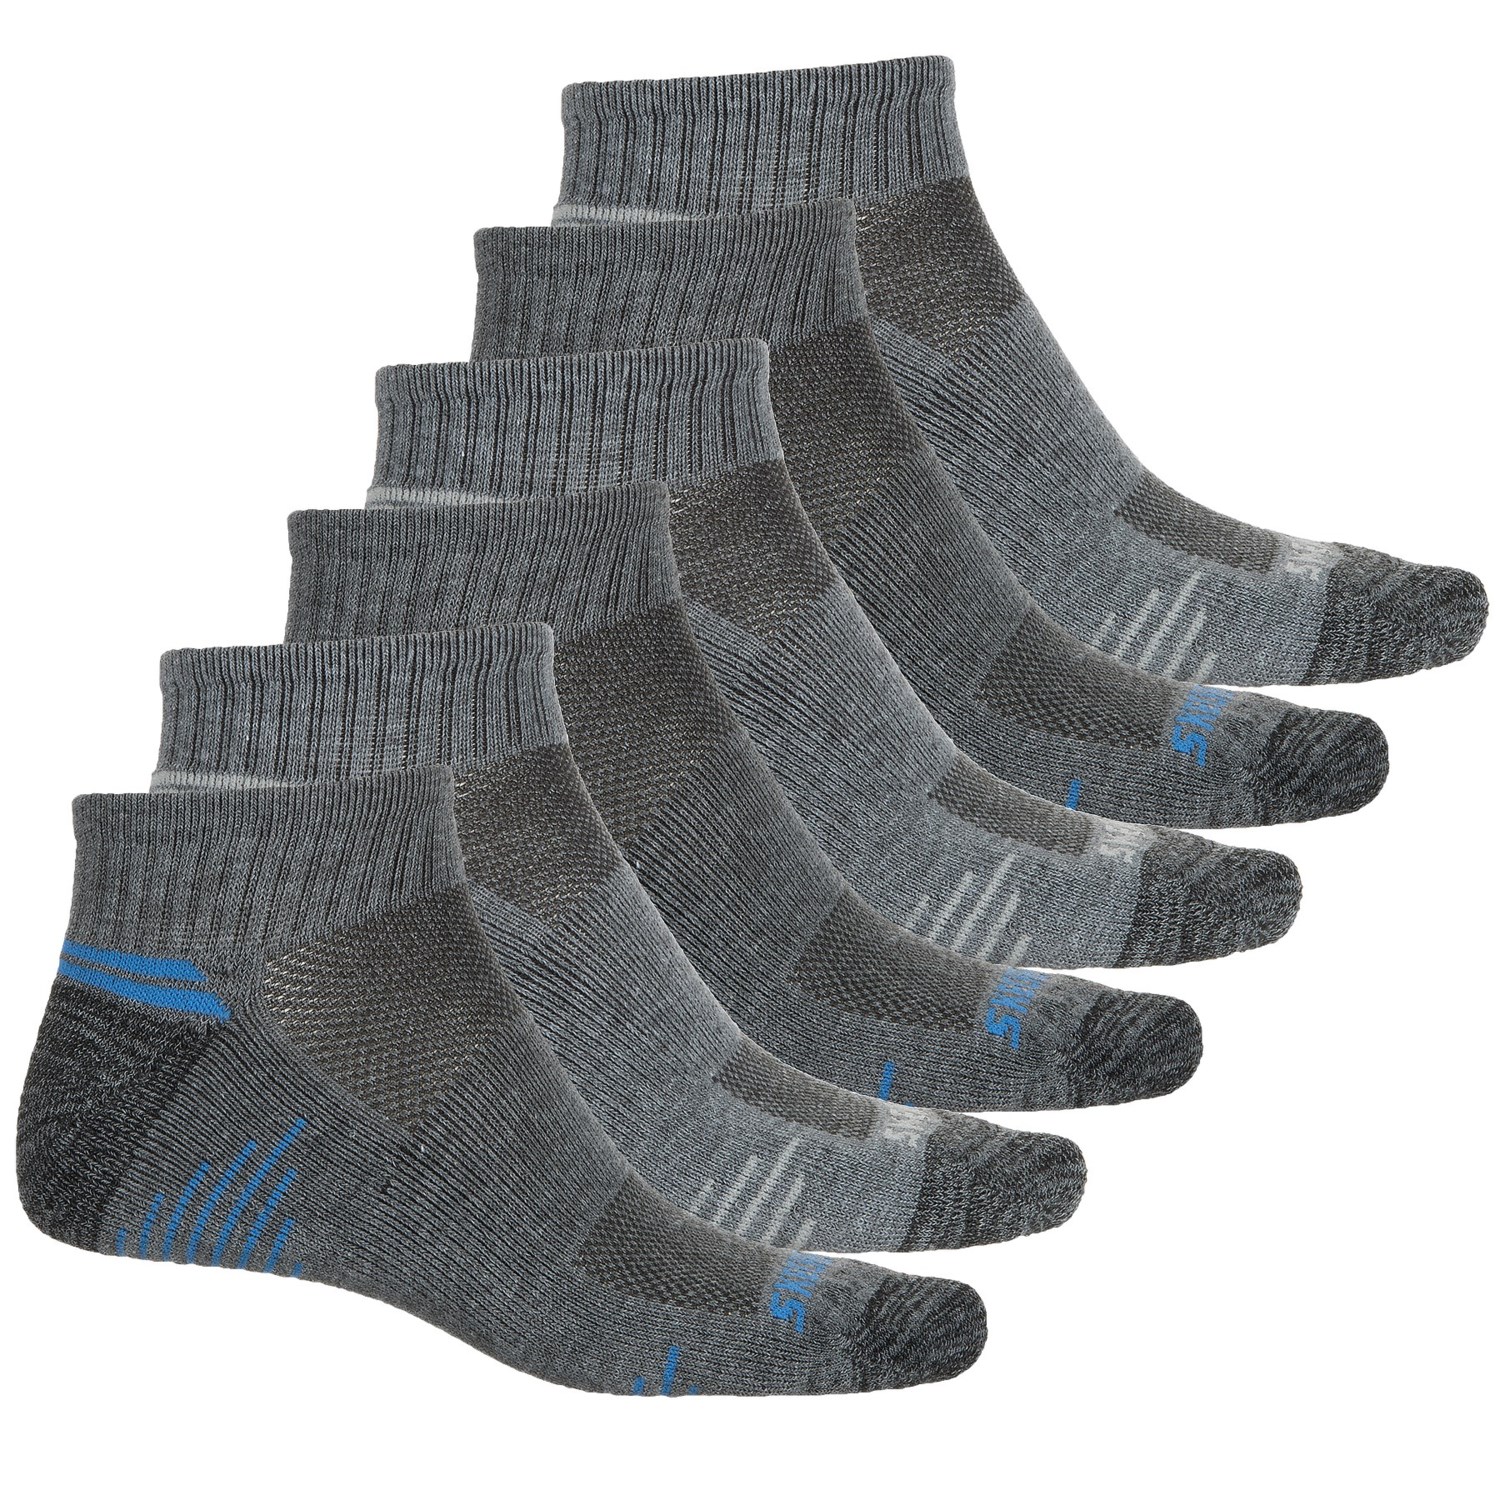 Skechers Running Socks (For Men) - Save 40%